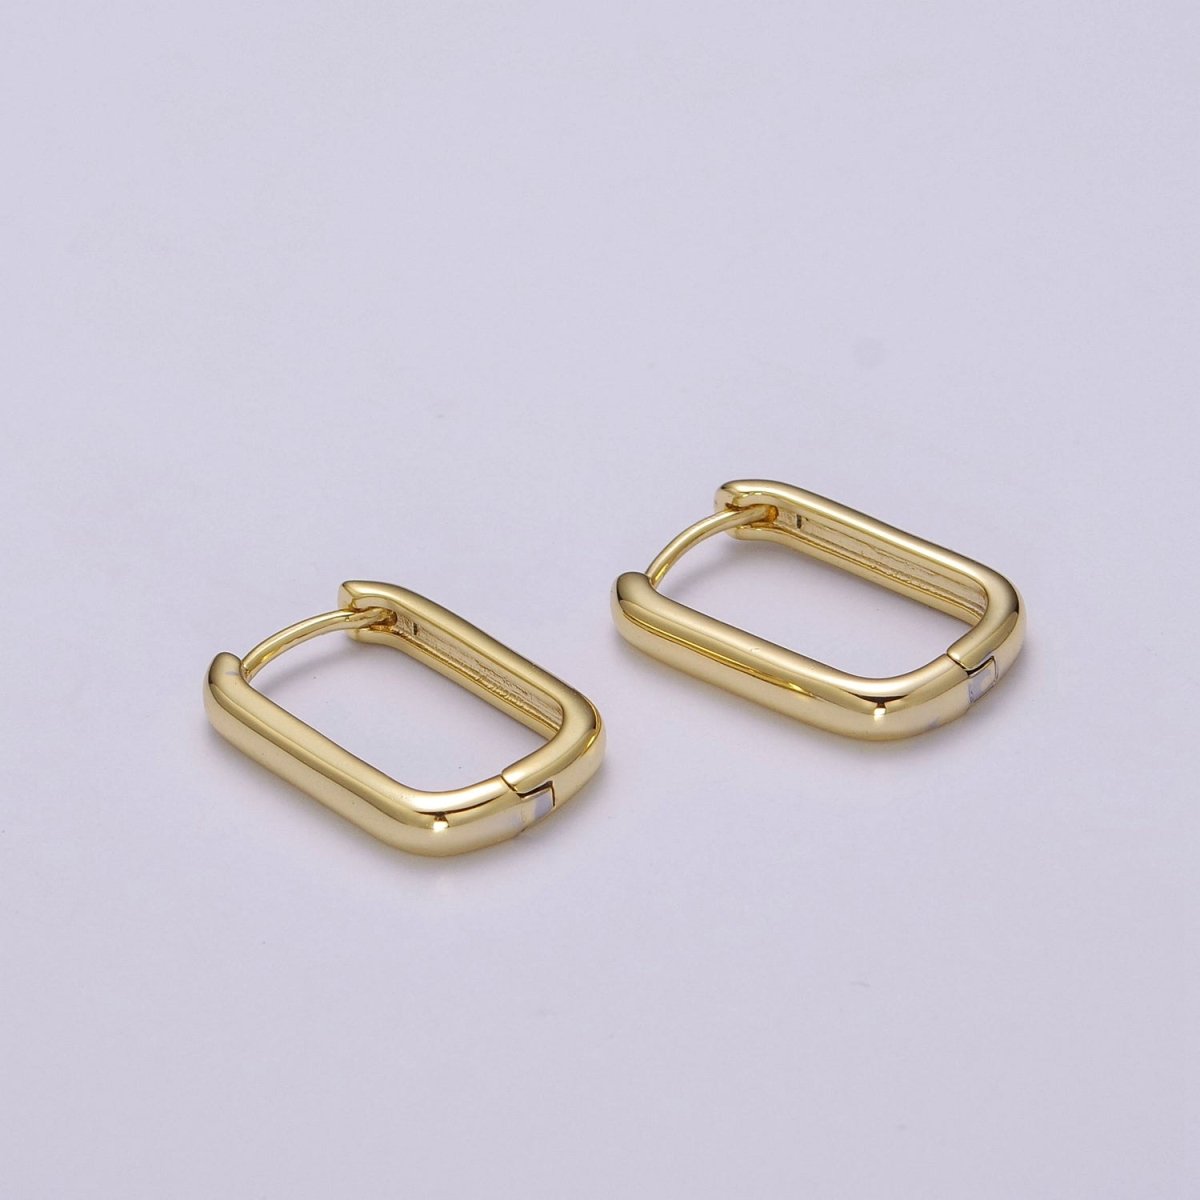 OS Hypoallergenic Gold Rectangular Hoop Earrings Small Huggie Hoops, U Shape Hoop, Oval Hoops, Simple Geometric Earring, Minimal Earring T-217 - DLUXCA